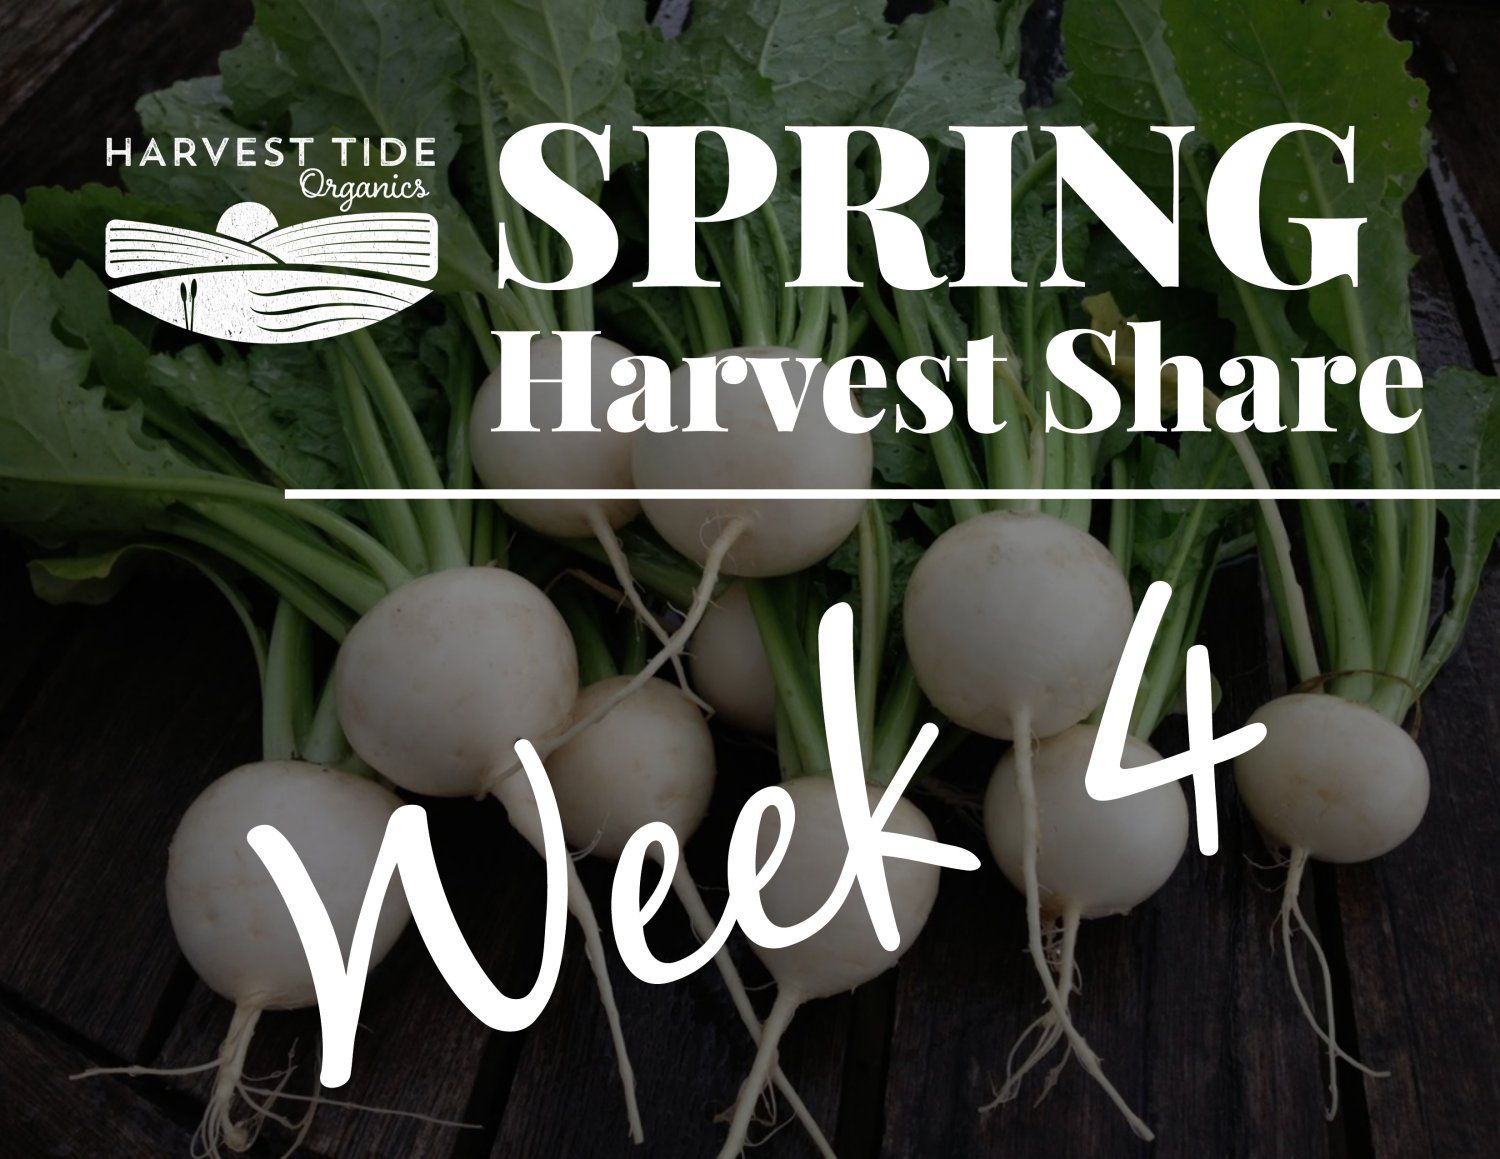 Next Happening: Spring Harvest Share - Week 4